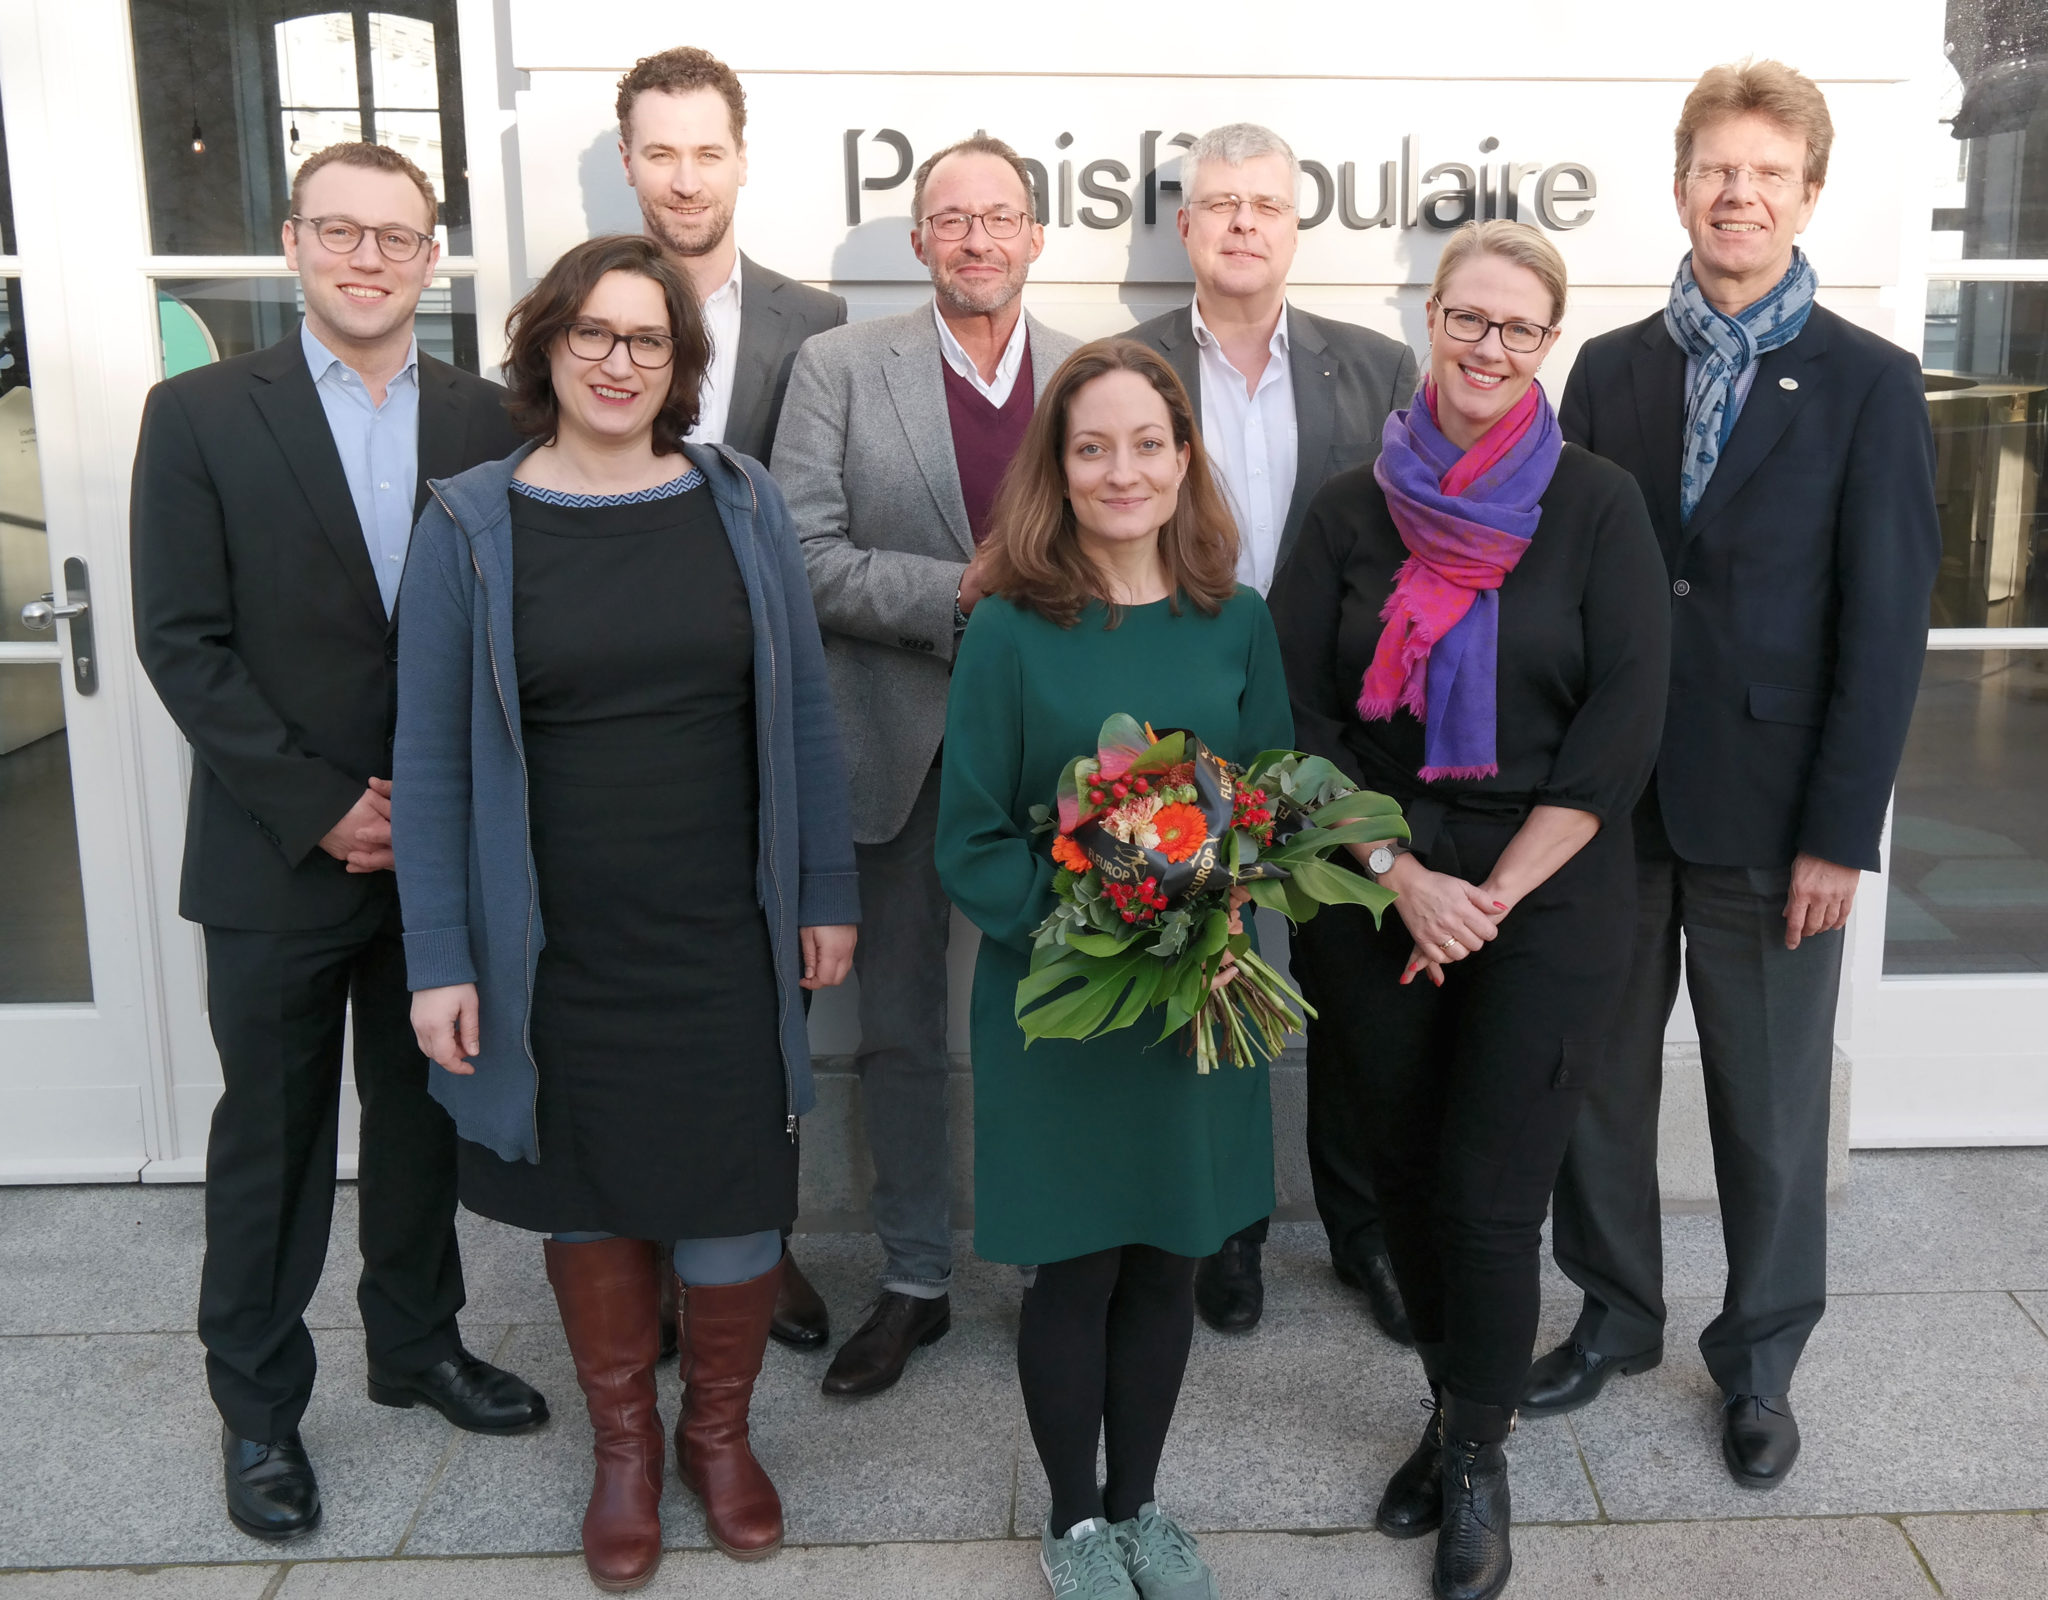 Die diesjährige Jury (v.l.): Felix Husmann, Susanne Bánhidai, Gregor Burgenmeister, Holger Wemhoff, Christiane Karg, Prof. Christian Höppner, Christiane Winter-Thumann, Gerald Mertens